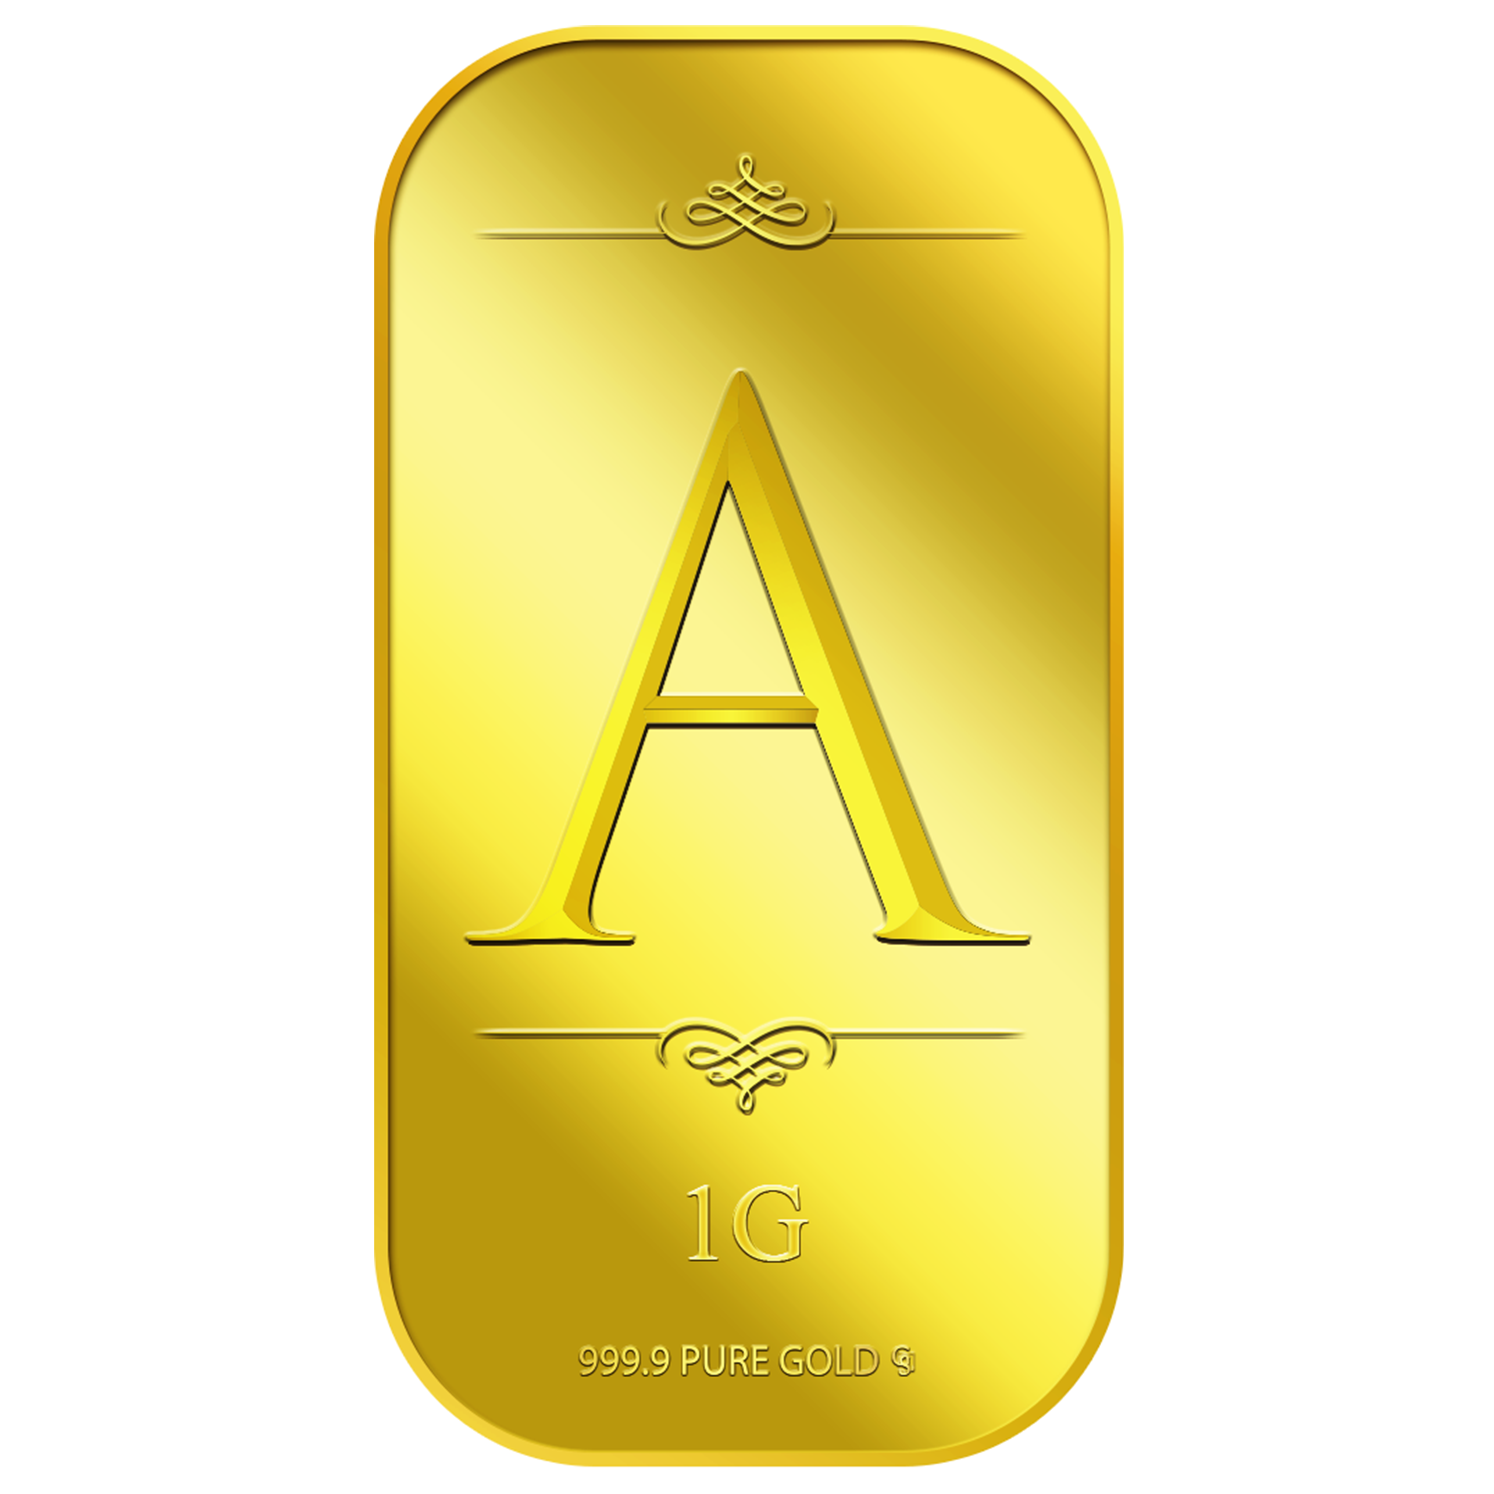 1g Alphabet A Gold Bar